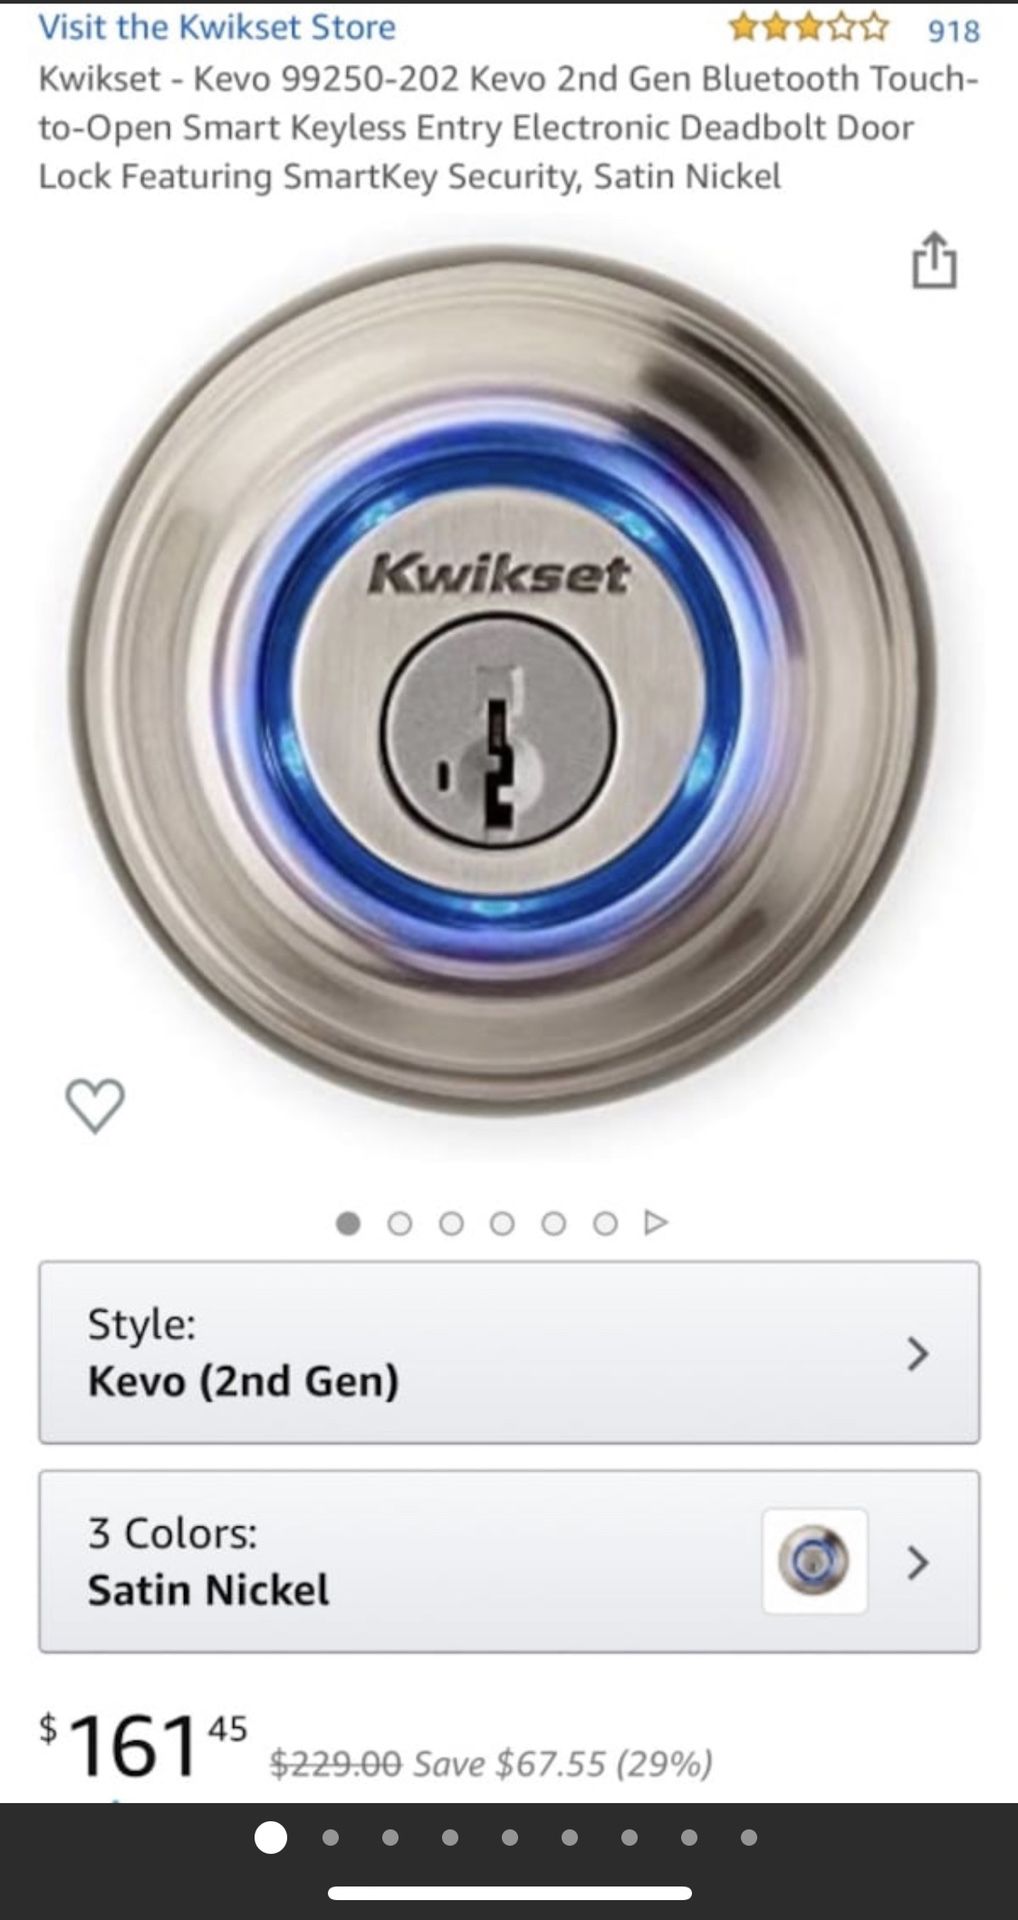 Kwikset - Kevo 99250-202 , 2nd Gen Smart Keyless Entry Deadbolt Lock dewalt tools iPhone